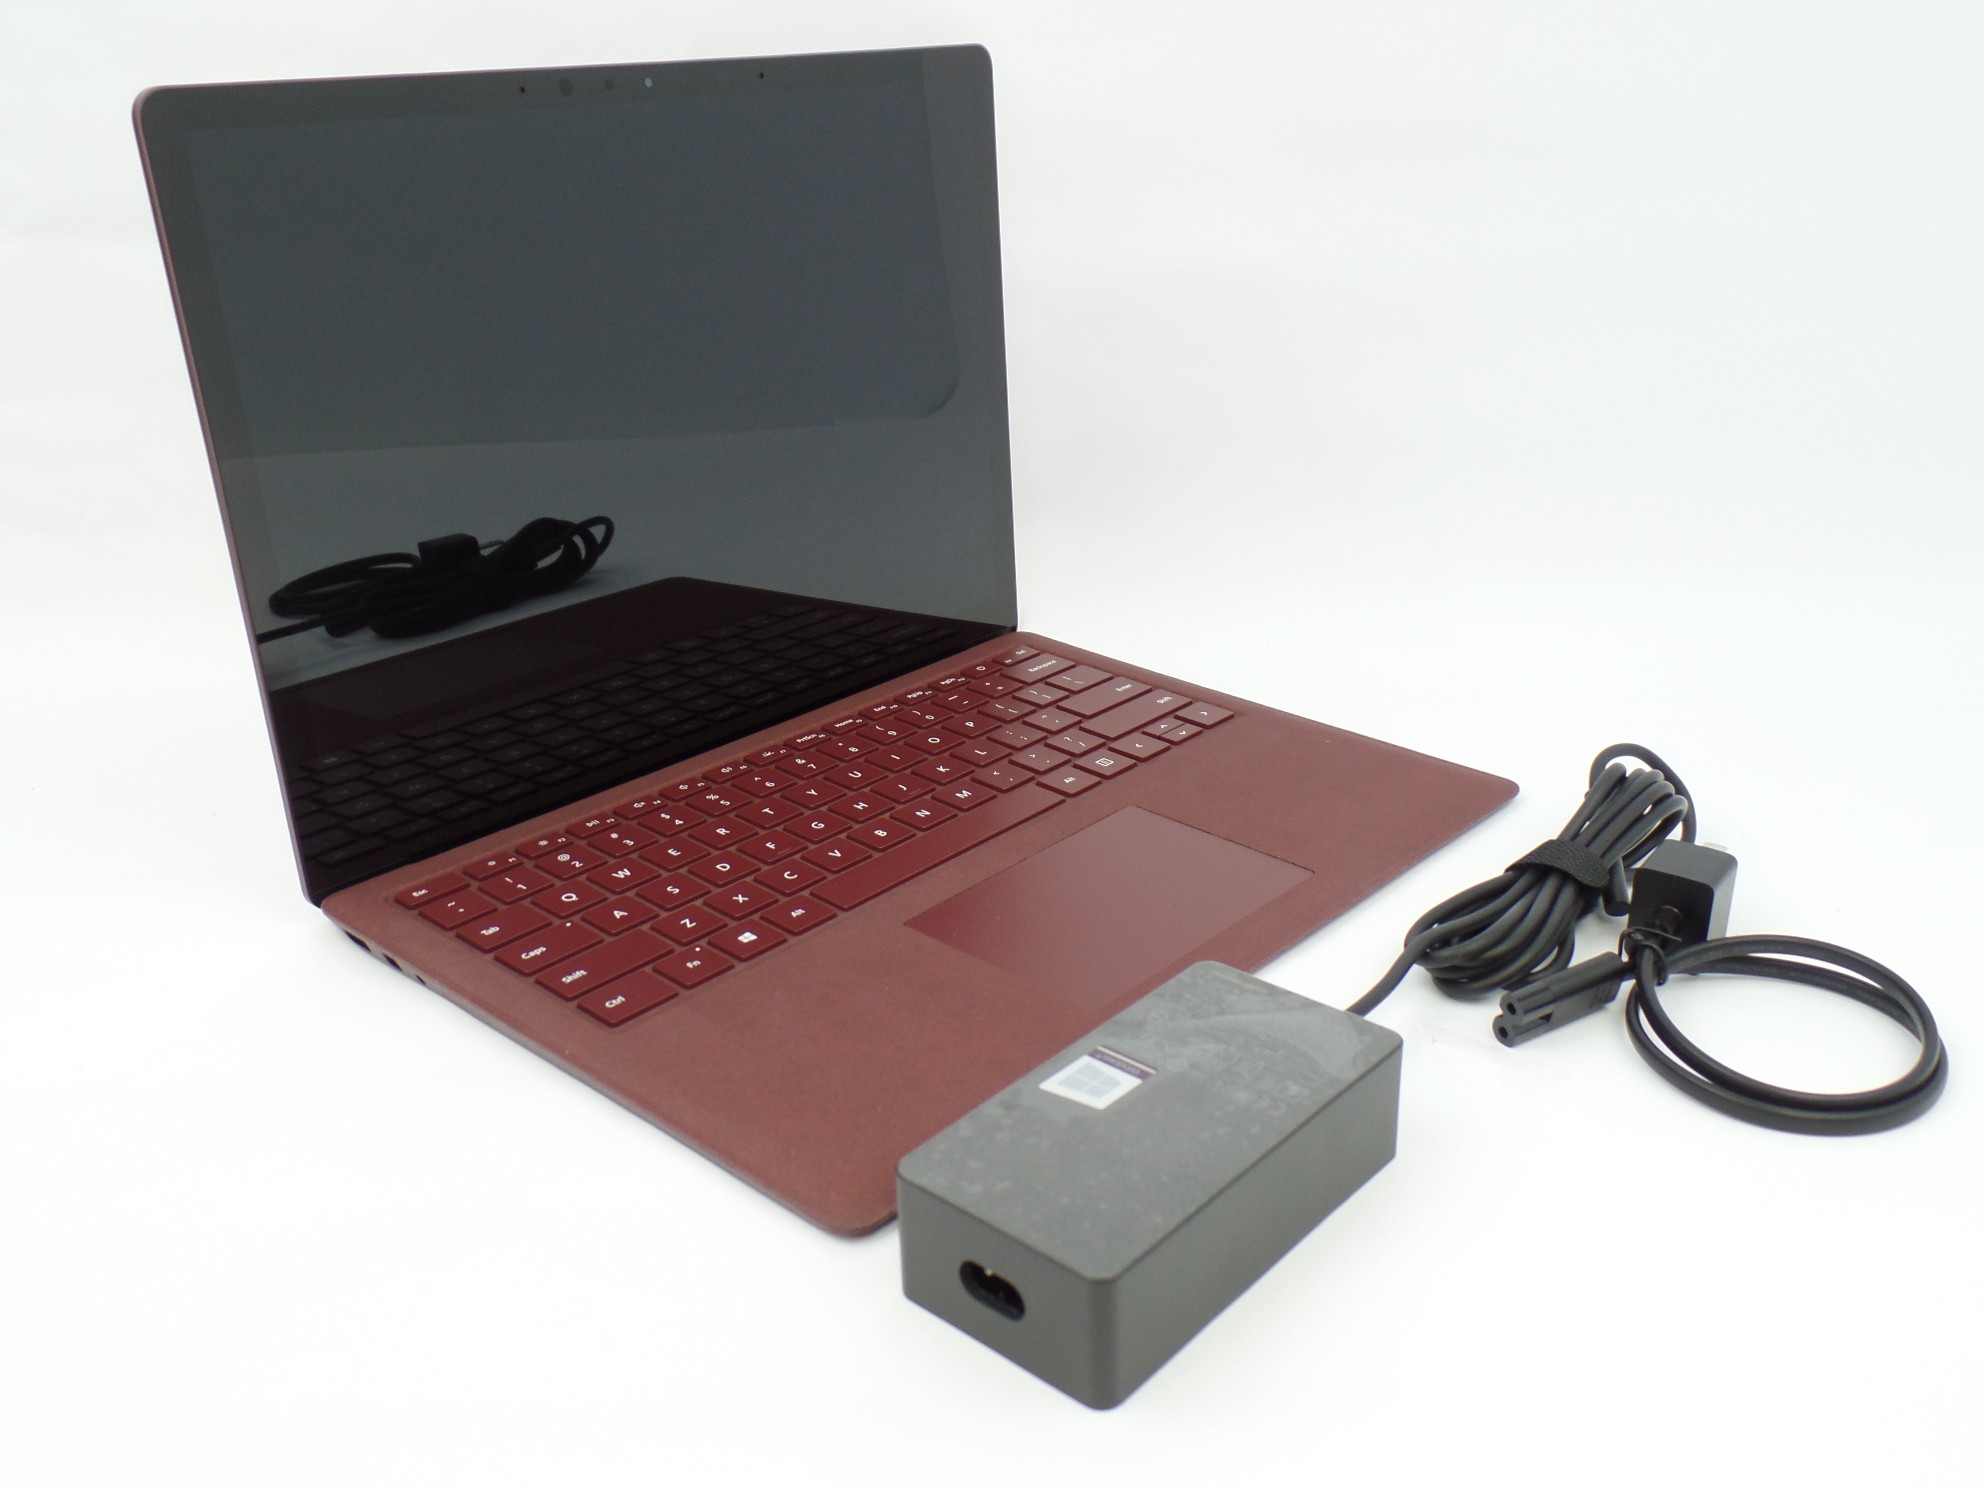 Microsoft Surface Laptop 1769 13.5" Touch i7-7660U 2.5Hz 8GB 256GB SSD Iris W10P